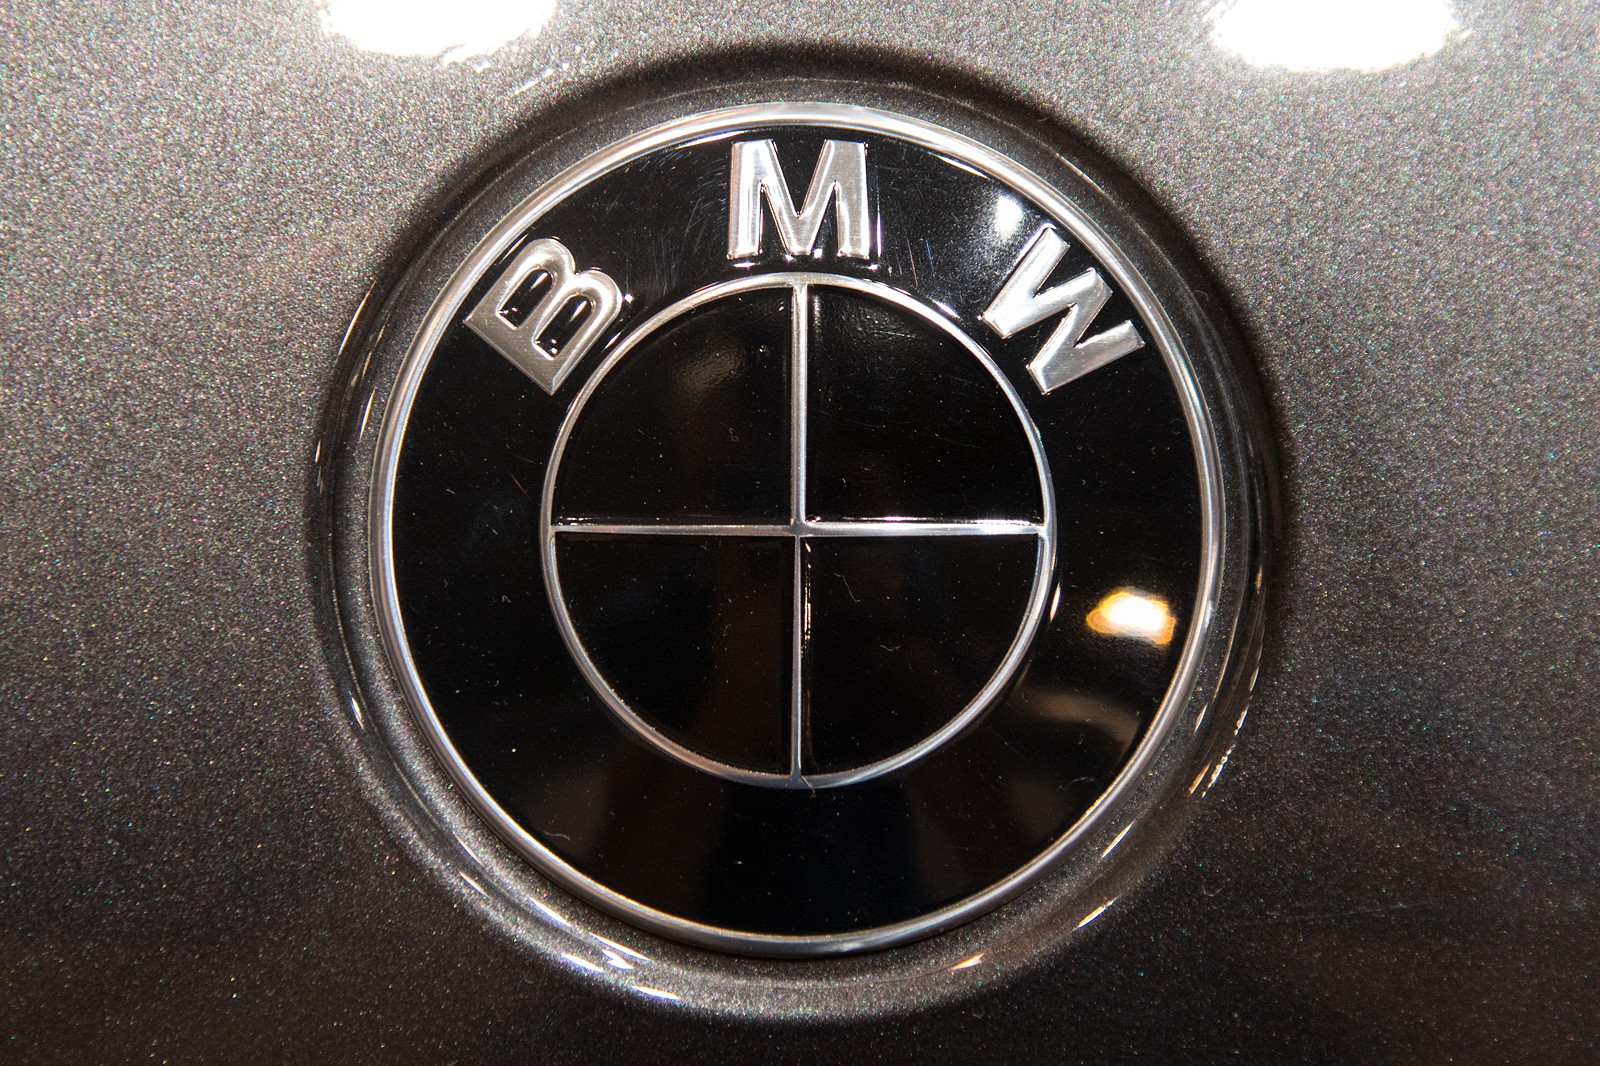 Foto: Essen Motor Show 2017: BMW M550i mit BMW Logo in schwarz